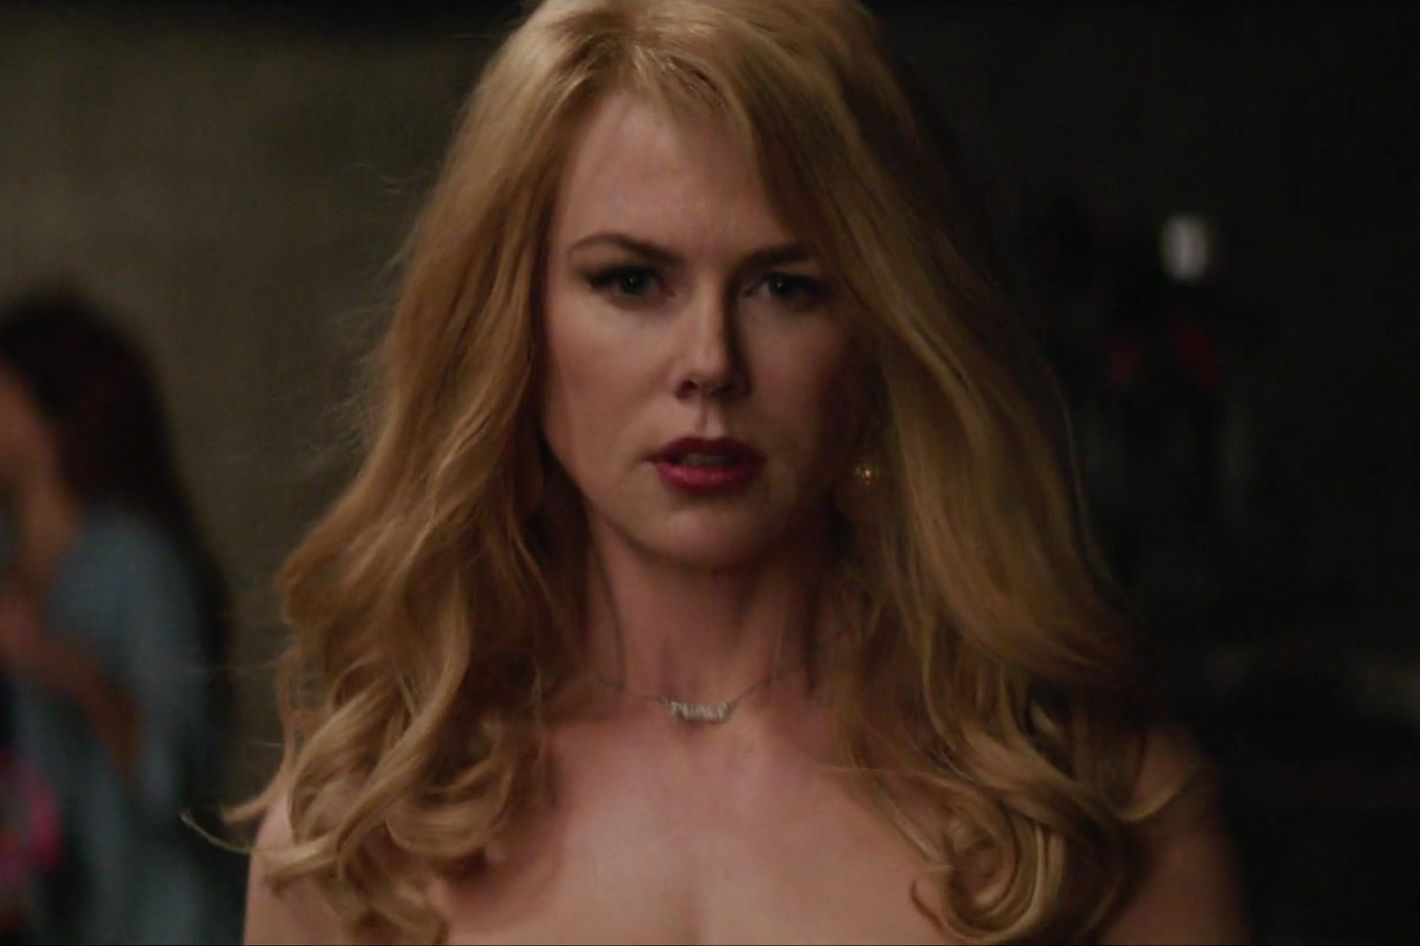 Nicole Kidman Doing Porn - Watch Nicole Kidman Debate Going Topless in The Family Fang